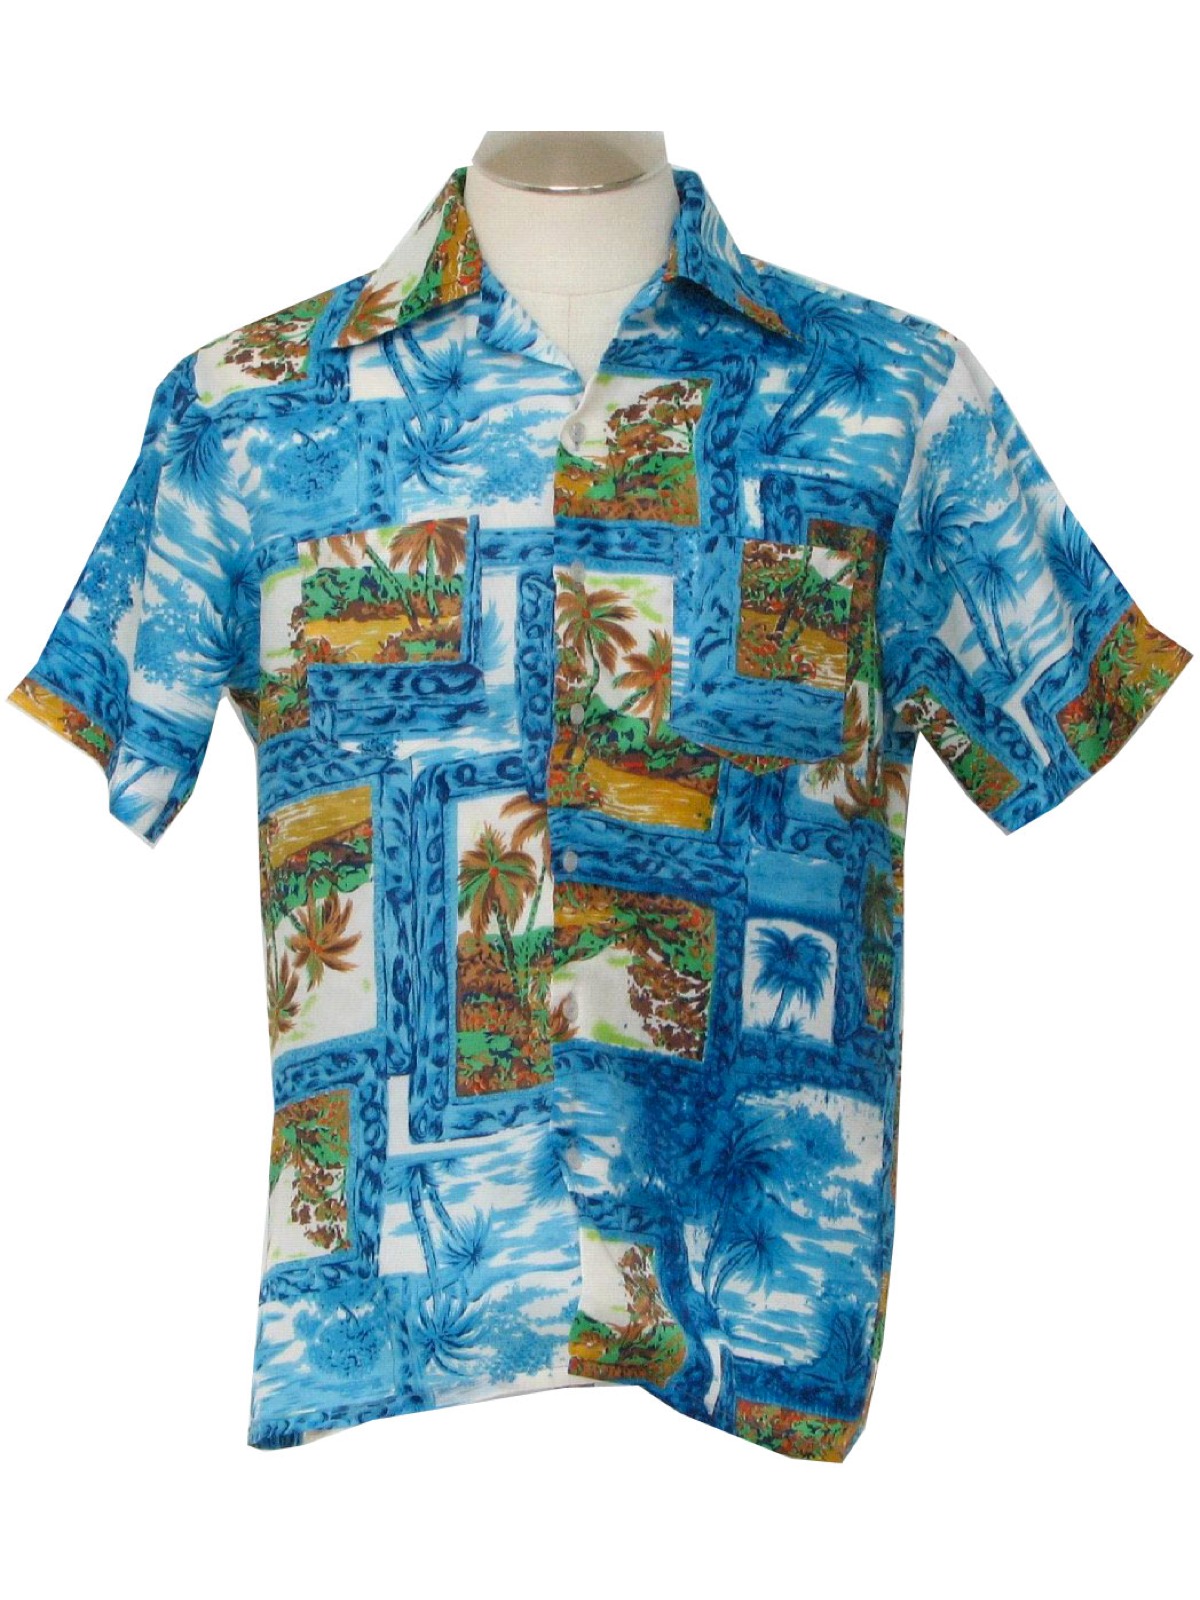 Waikiki Holiday 70's Vintage Hawaiian Shirt: 70s -Waikiki Holiday- Mens ...